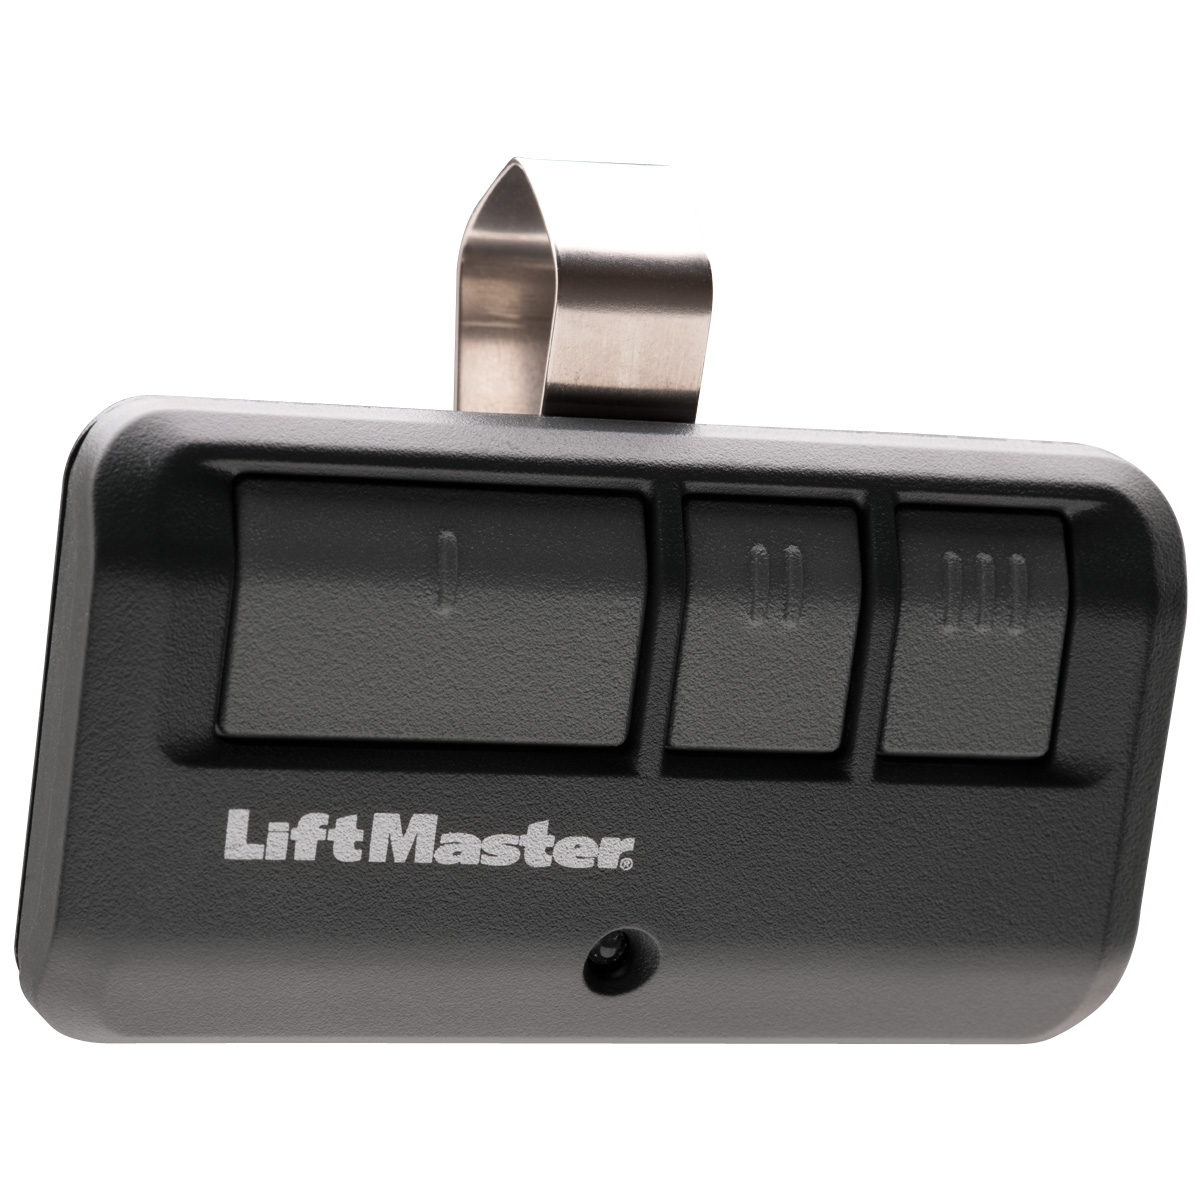 LiftMaster Premium Series 8355 Garage Door Opener - 893LM